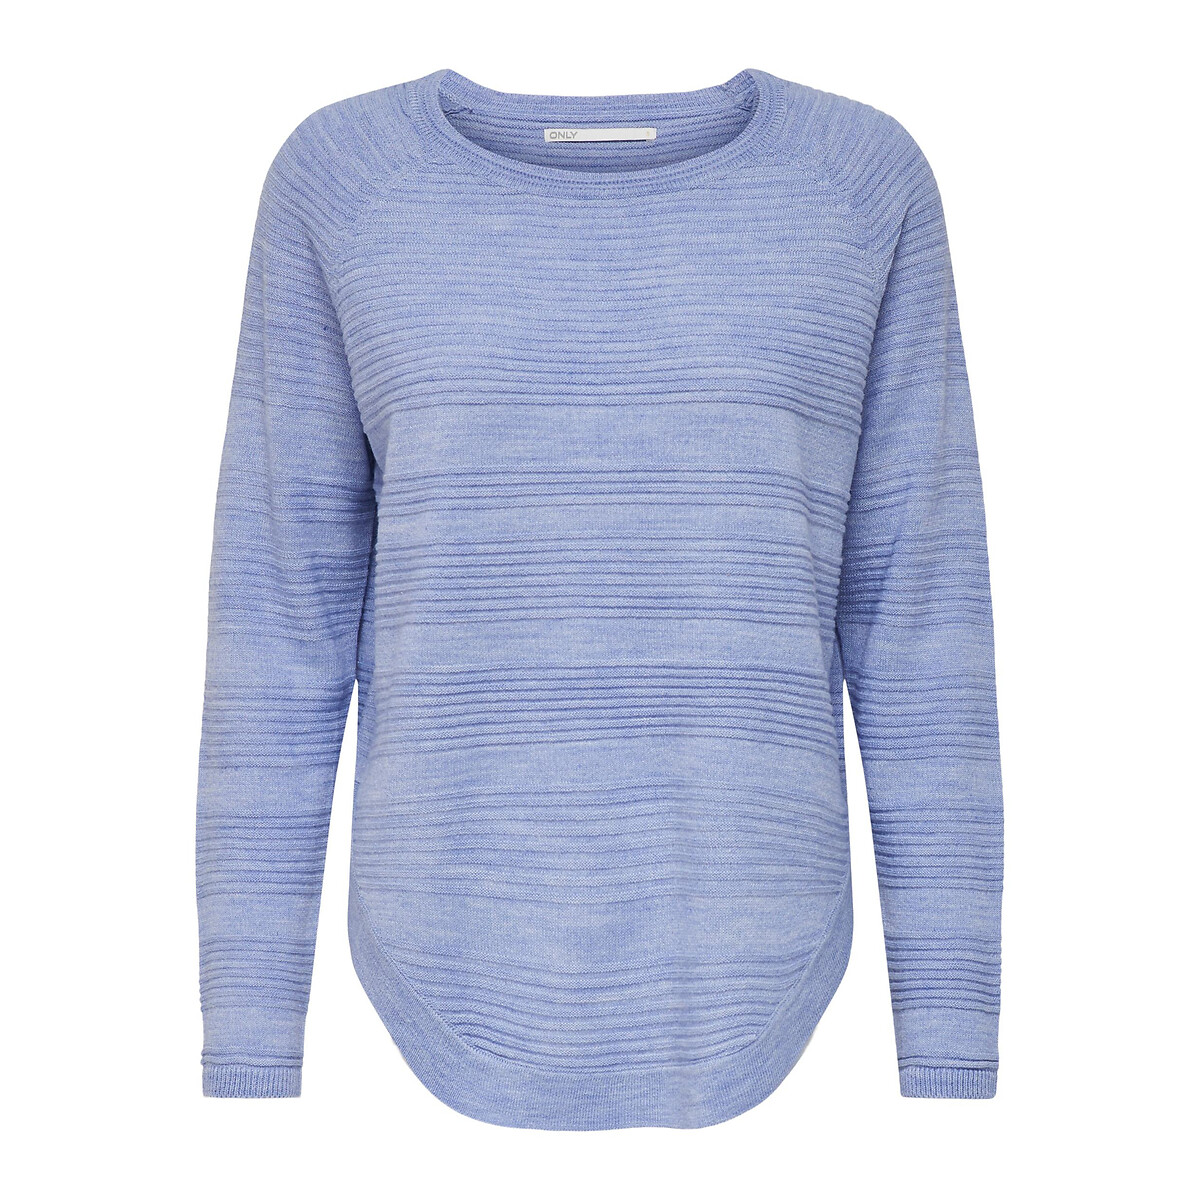 Пуловер ONLY С круглым вырезом S синий, размер S - фото 3